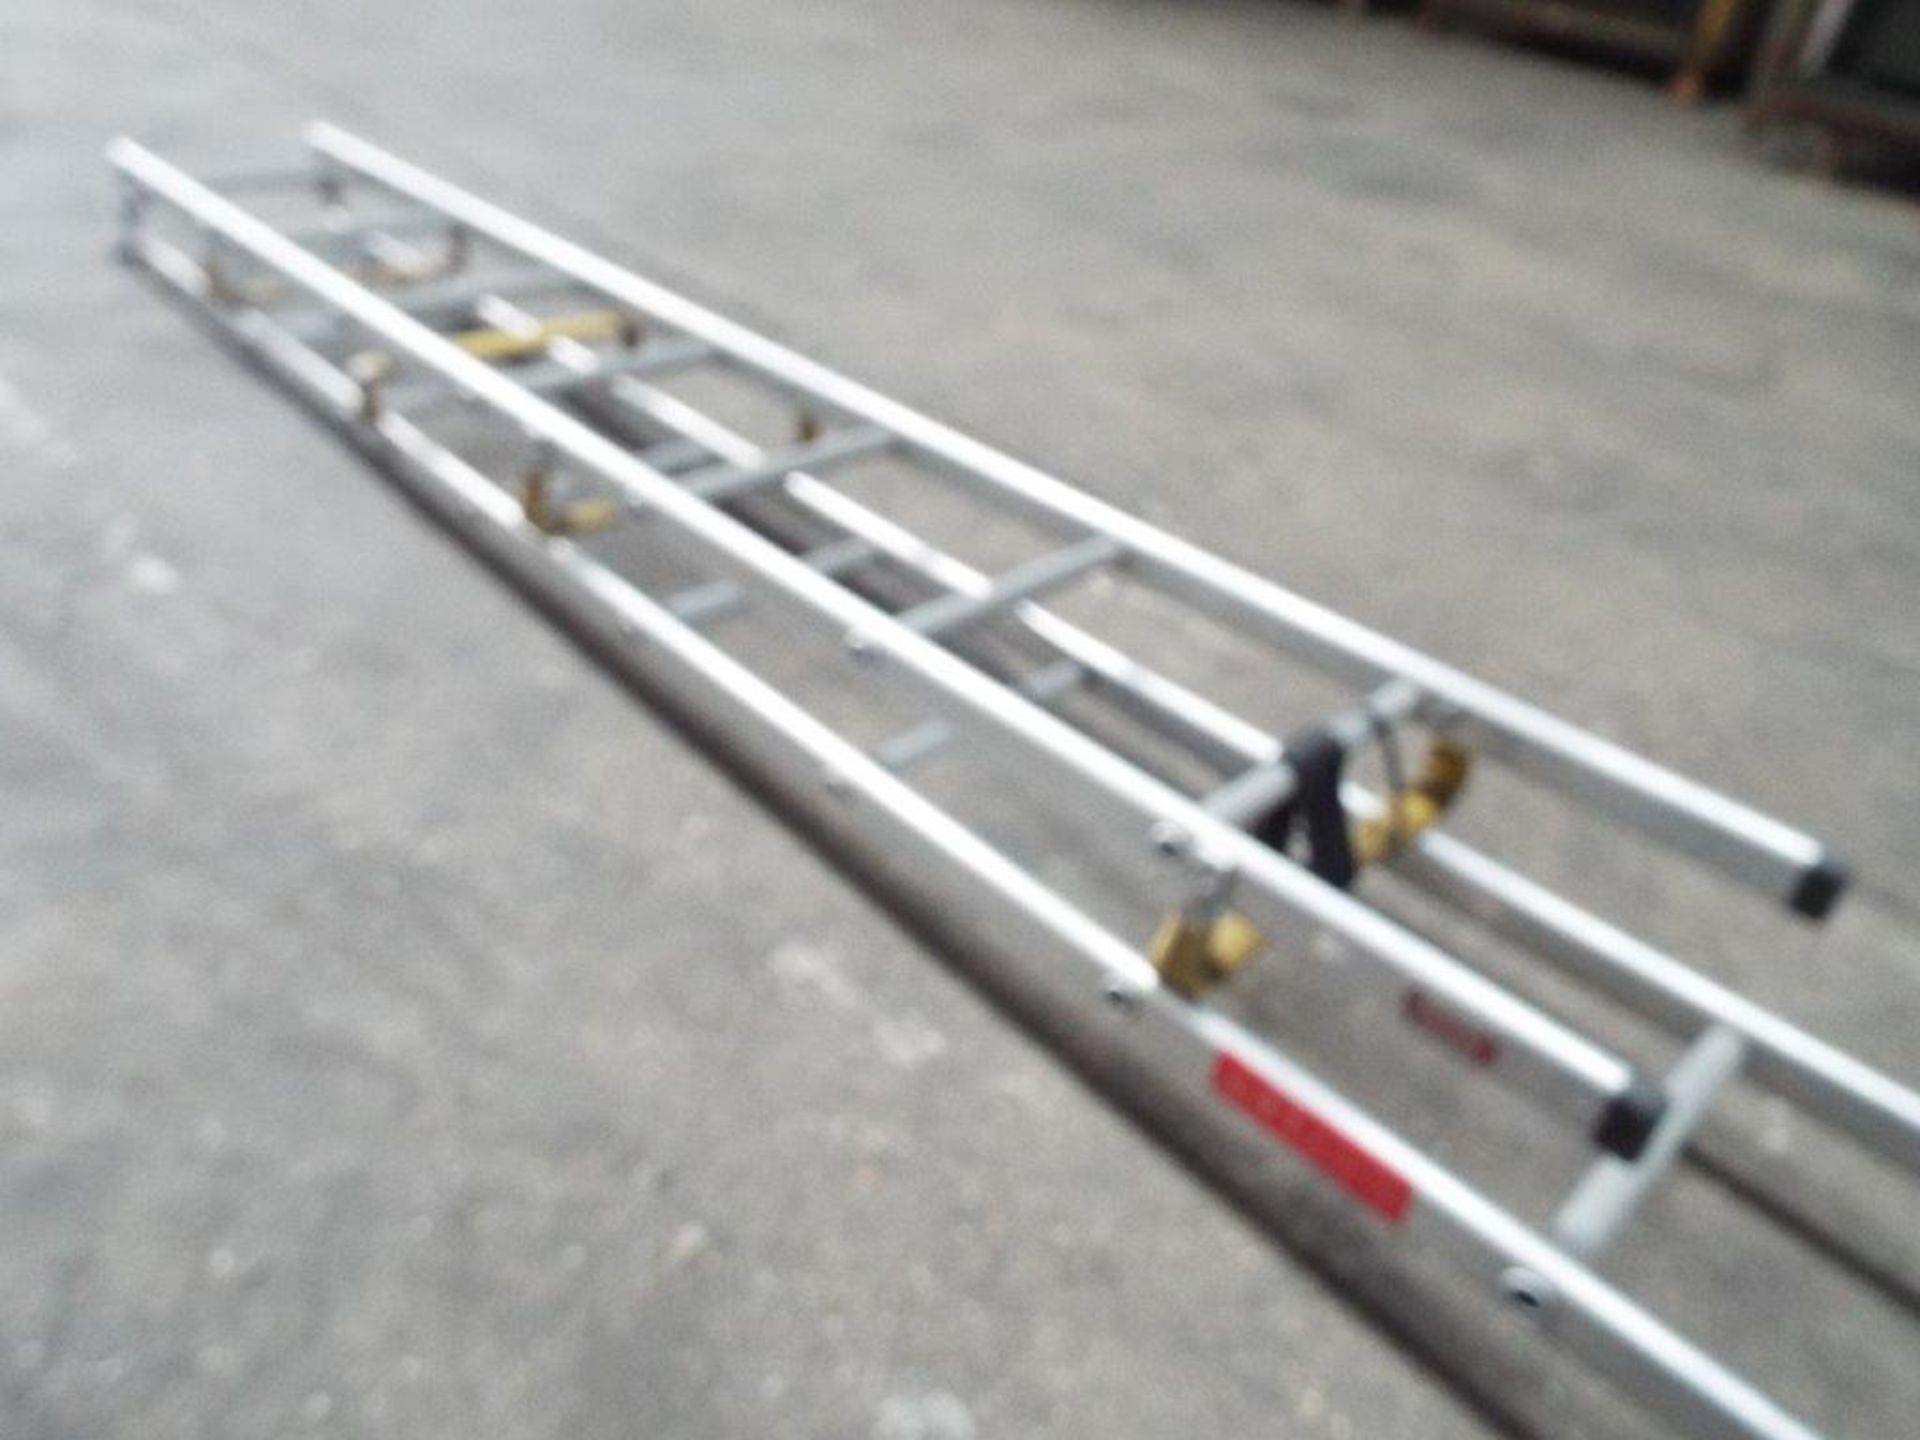 Bayley Folding Aluminium Roof Ladder - Image 4 of 6